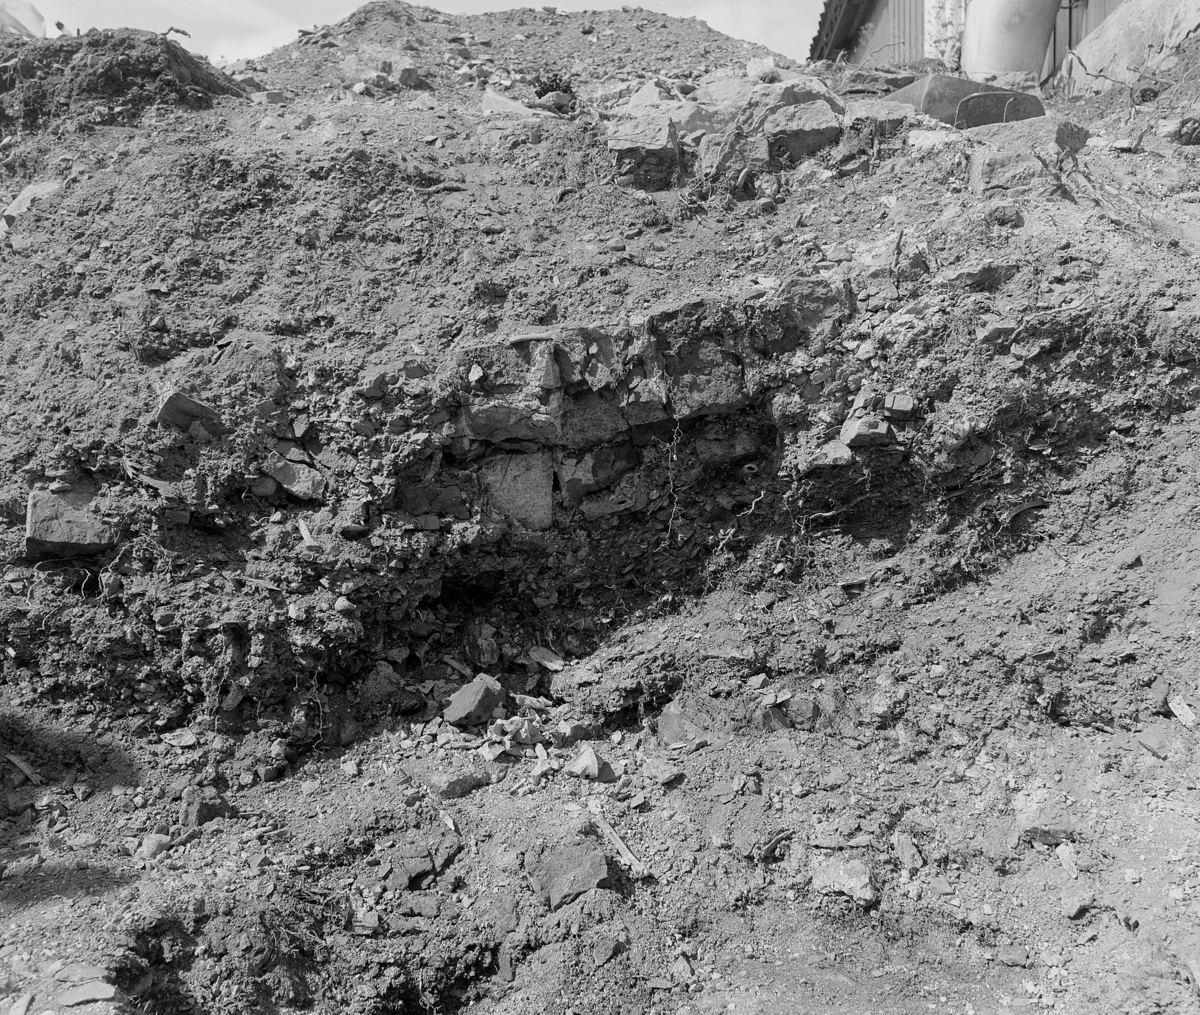 Arkeologiske undersøkelser i kjellerruin vest for drengestua 1986-1989. Nordvegg i den nyere delen av kjelleranlegget under utgravning 1989.